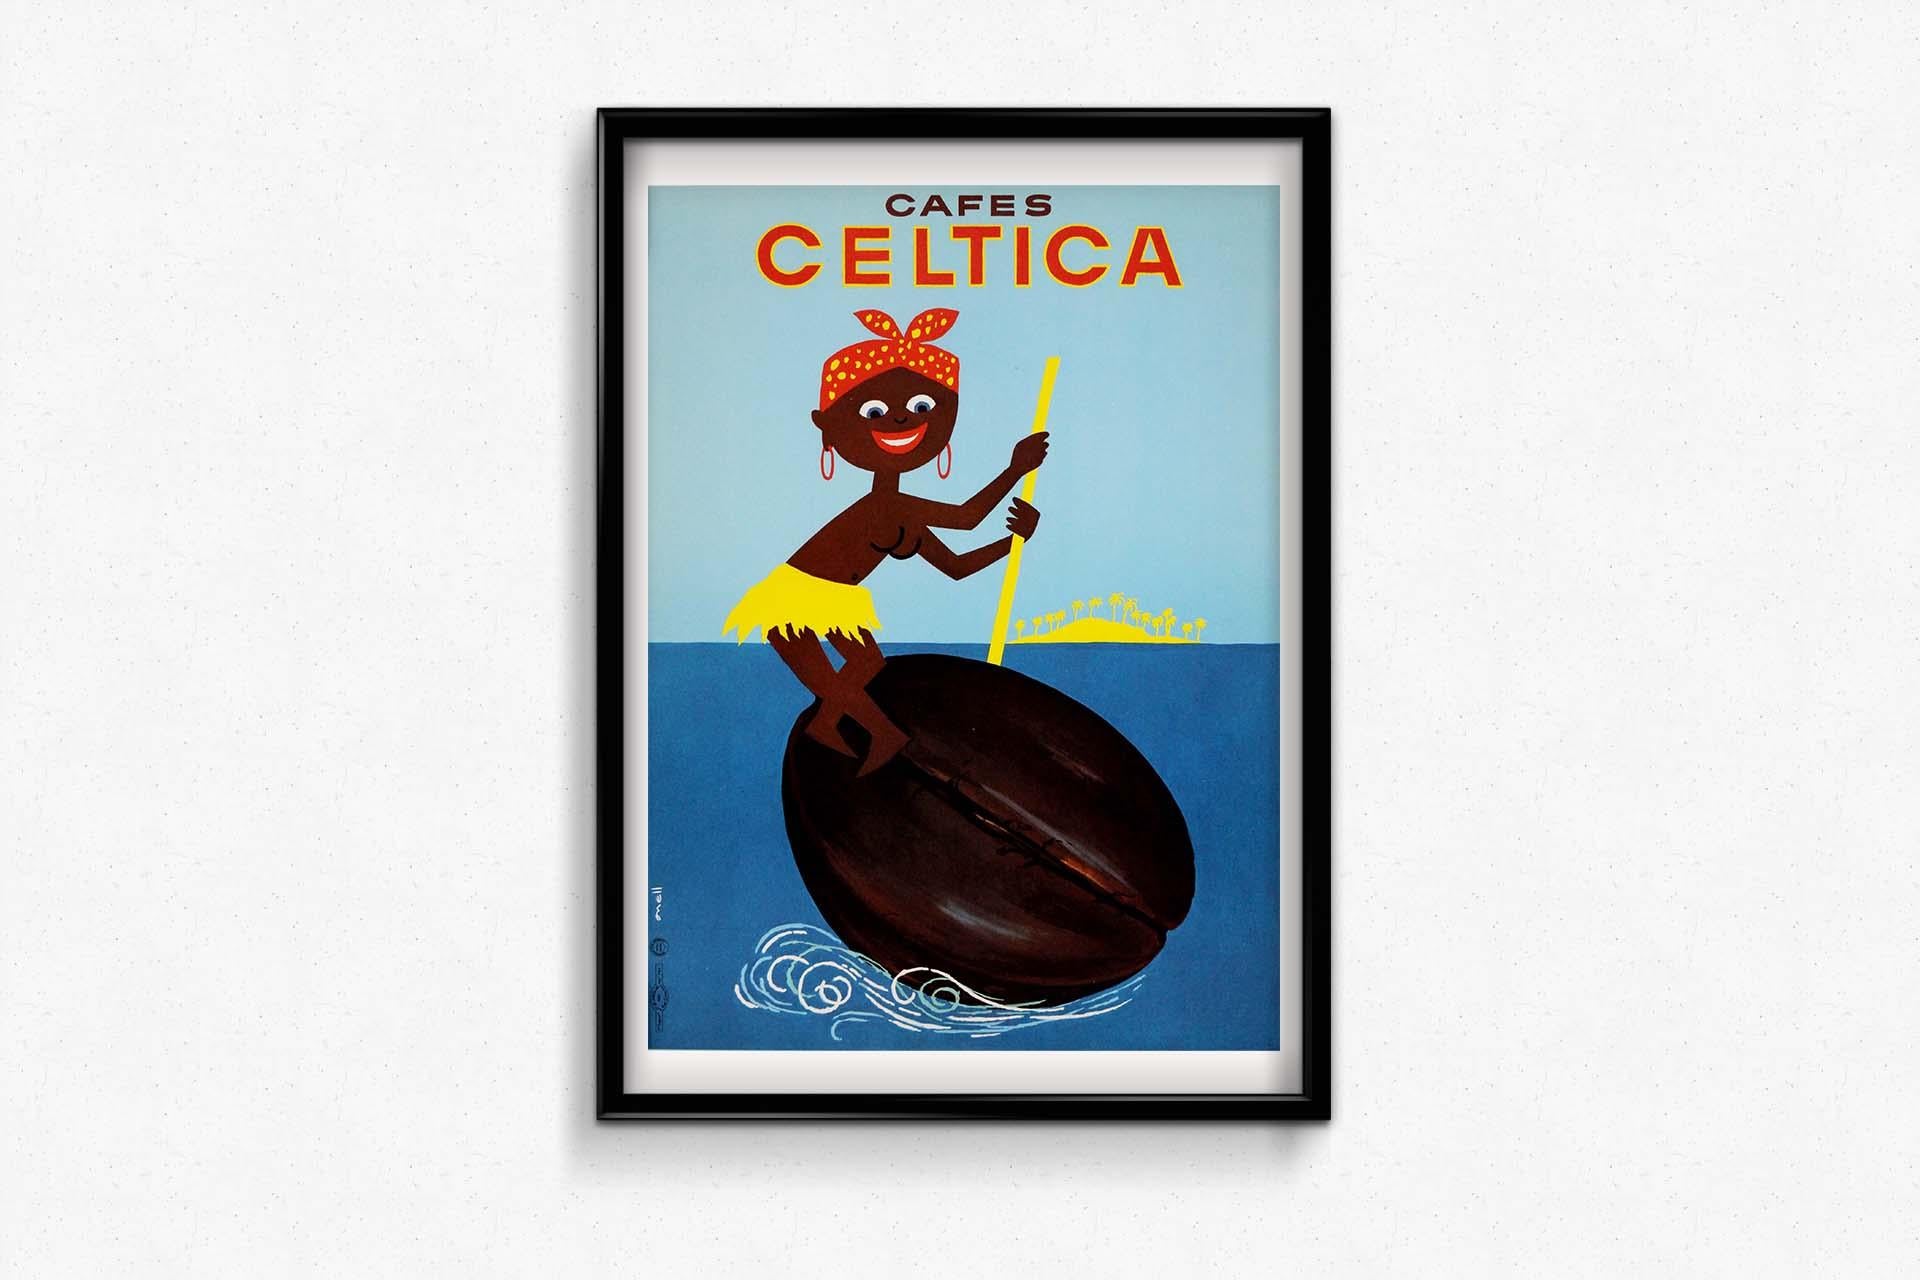 CIRCA 1960 Originalplakat von Onell für Cafes Celtica